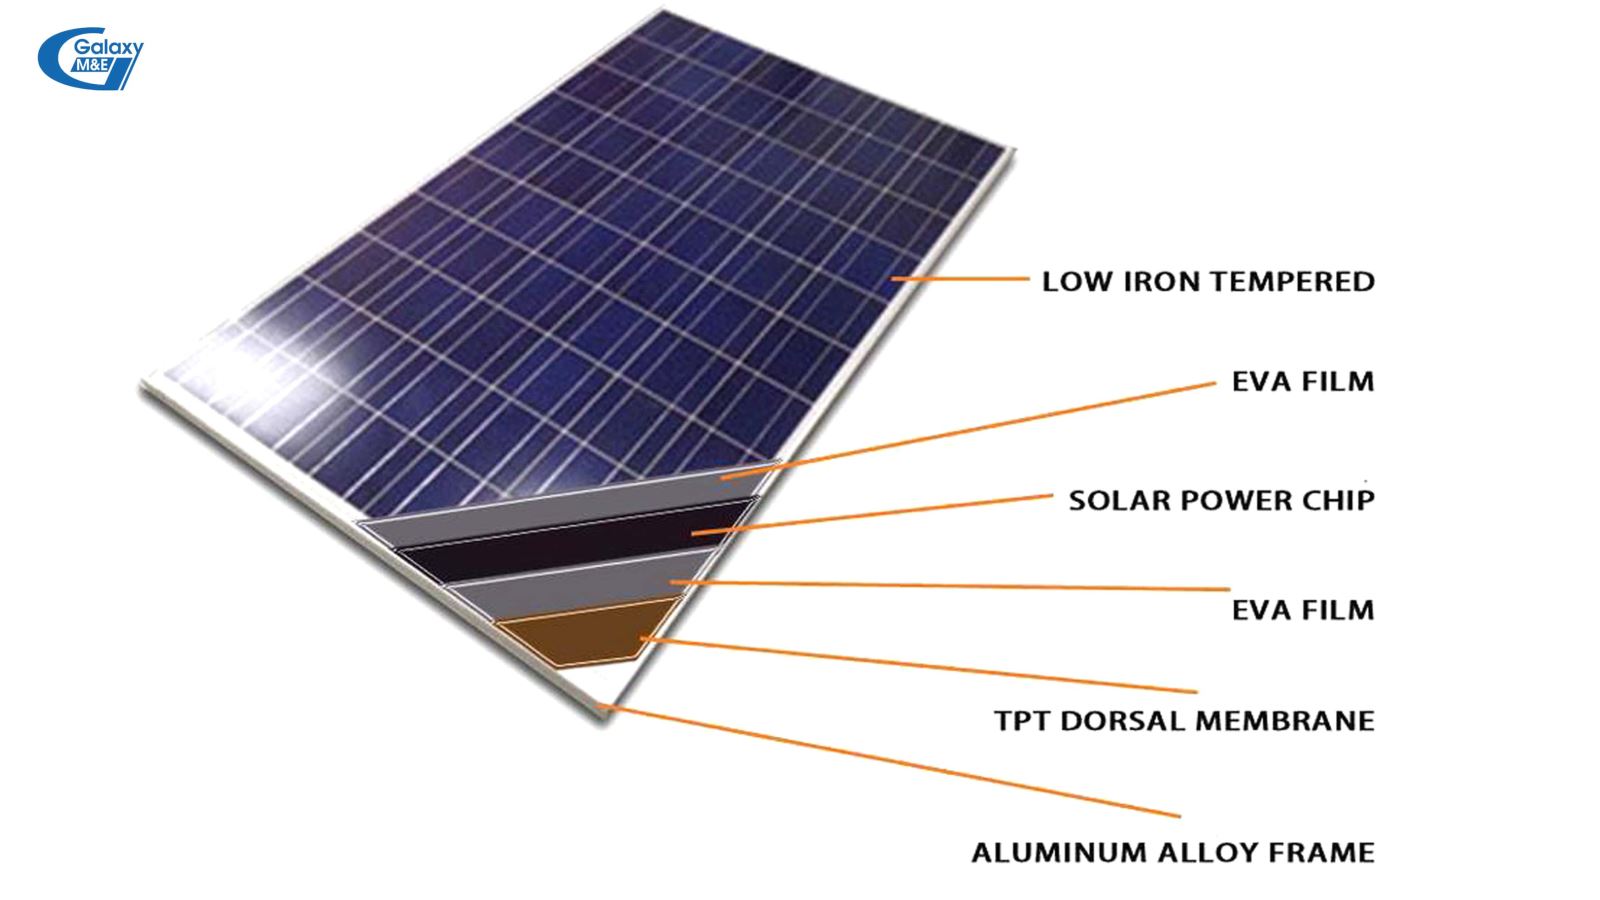 Pin mặt trời có cấu tào lần lượt từ ngoài vào trong: Lớp kim loại mỏng láng bề mặt, màng film trong suốt, chip điện tử, màng film, màng lưng, khung hợp kim nhôm.